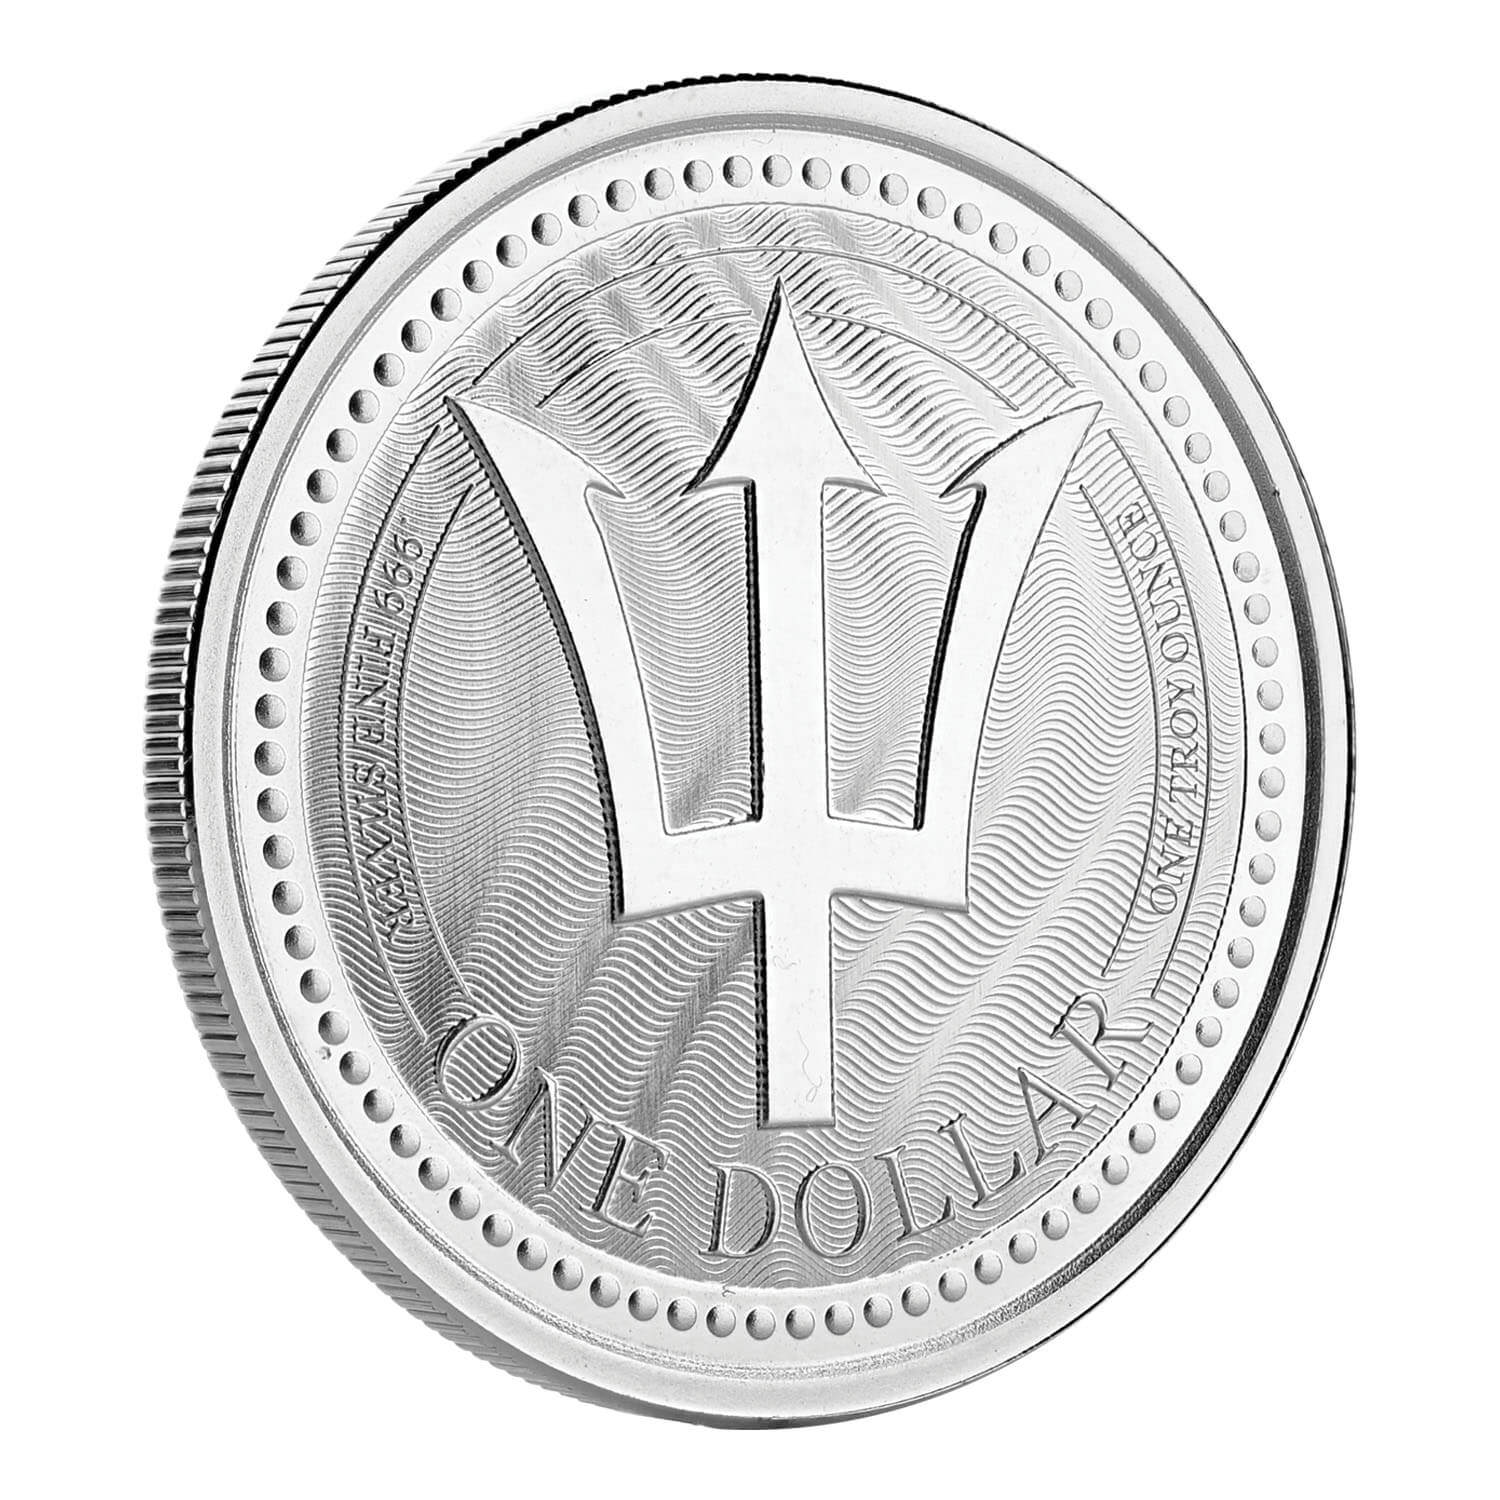 2017 Barbados Trident 1 oz Silver Coin